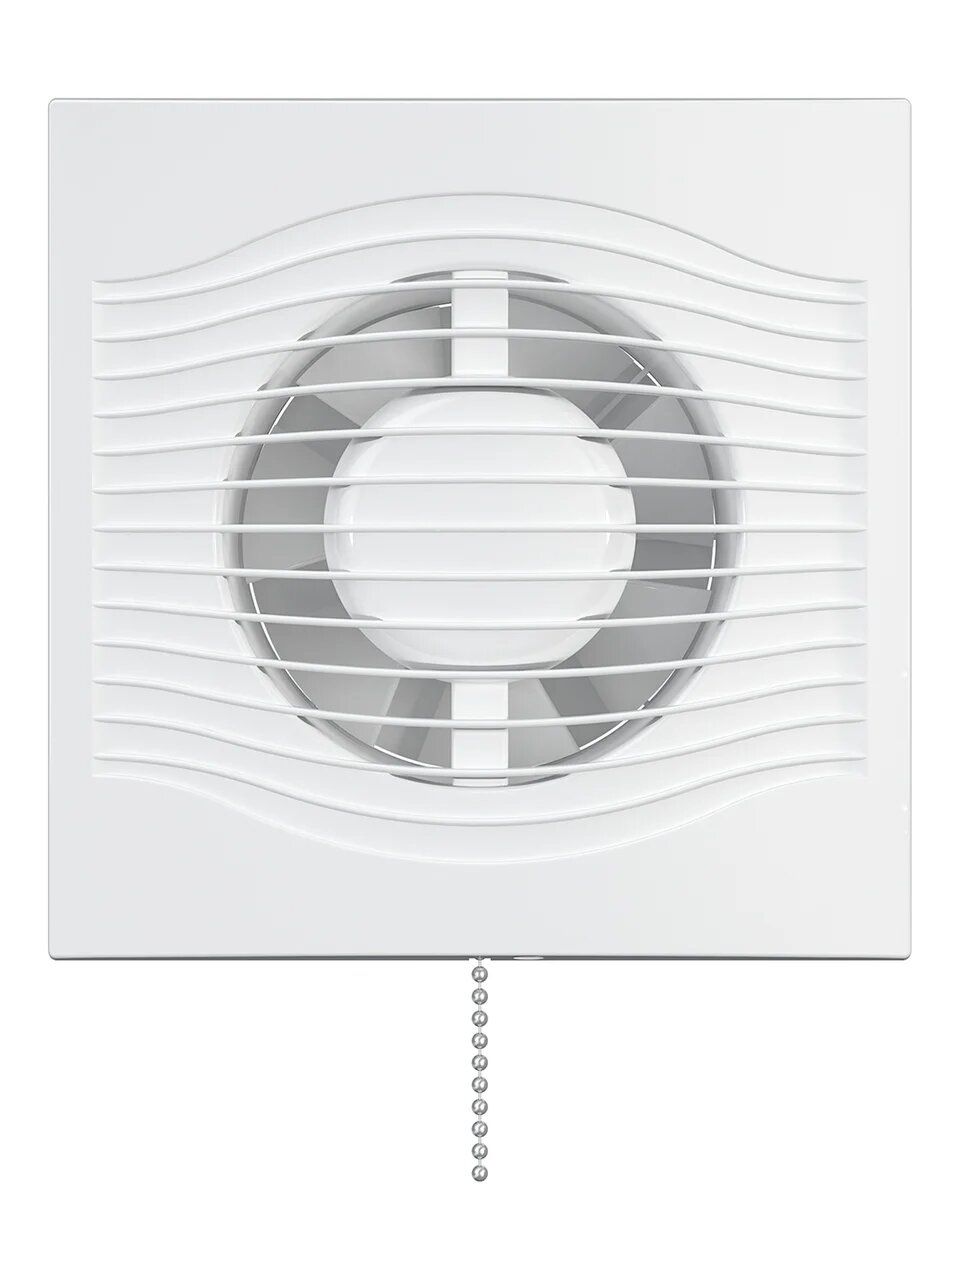 картинка Бытовой вентилятор SLIM 4C-02 DICITI от магазина sp-market